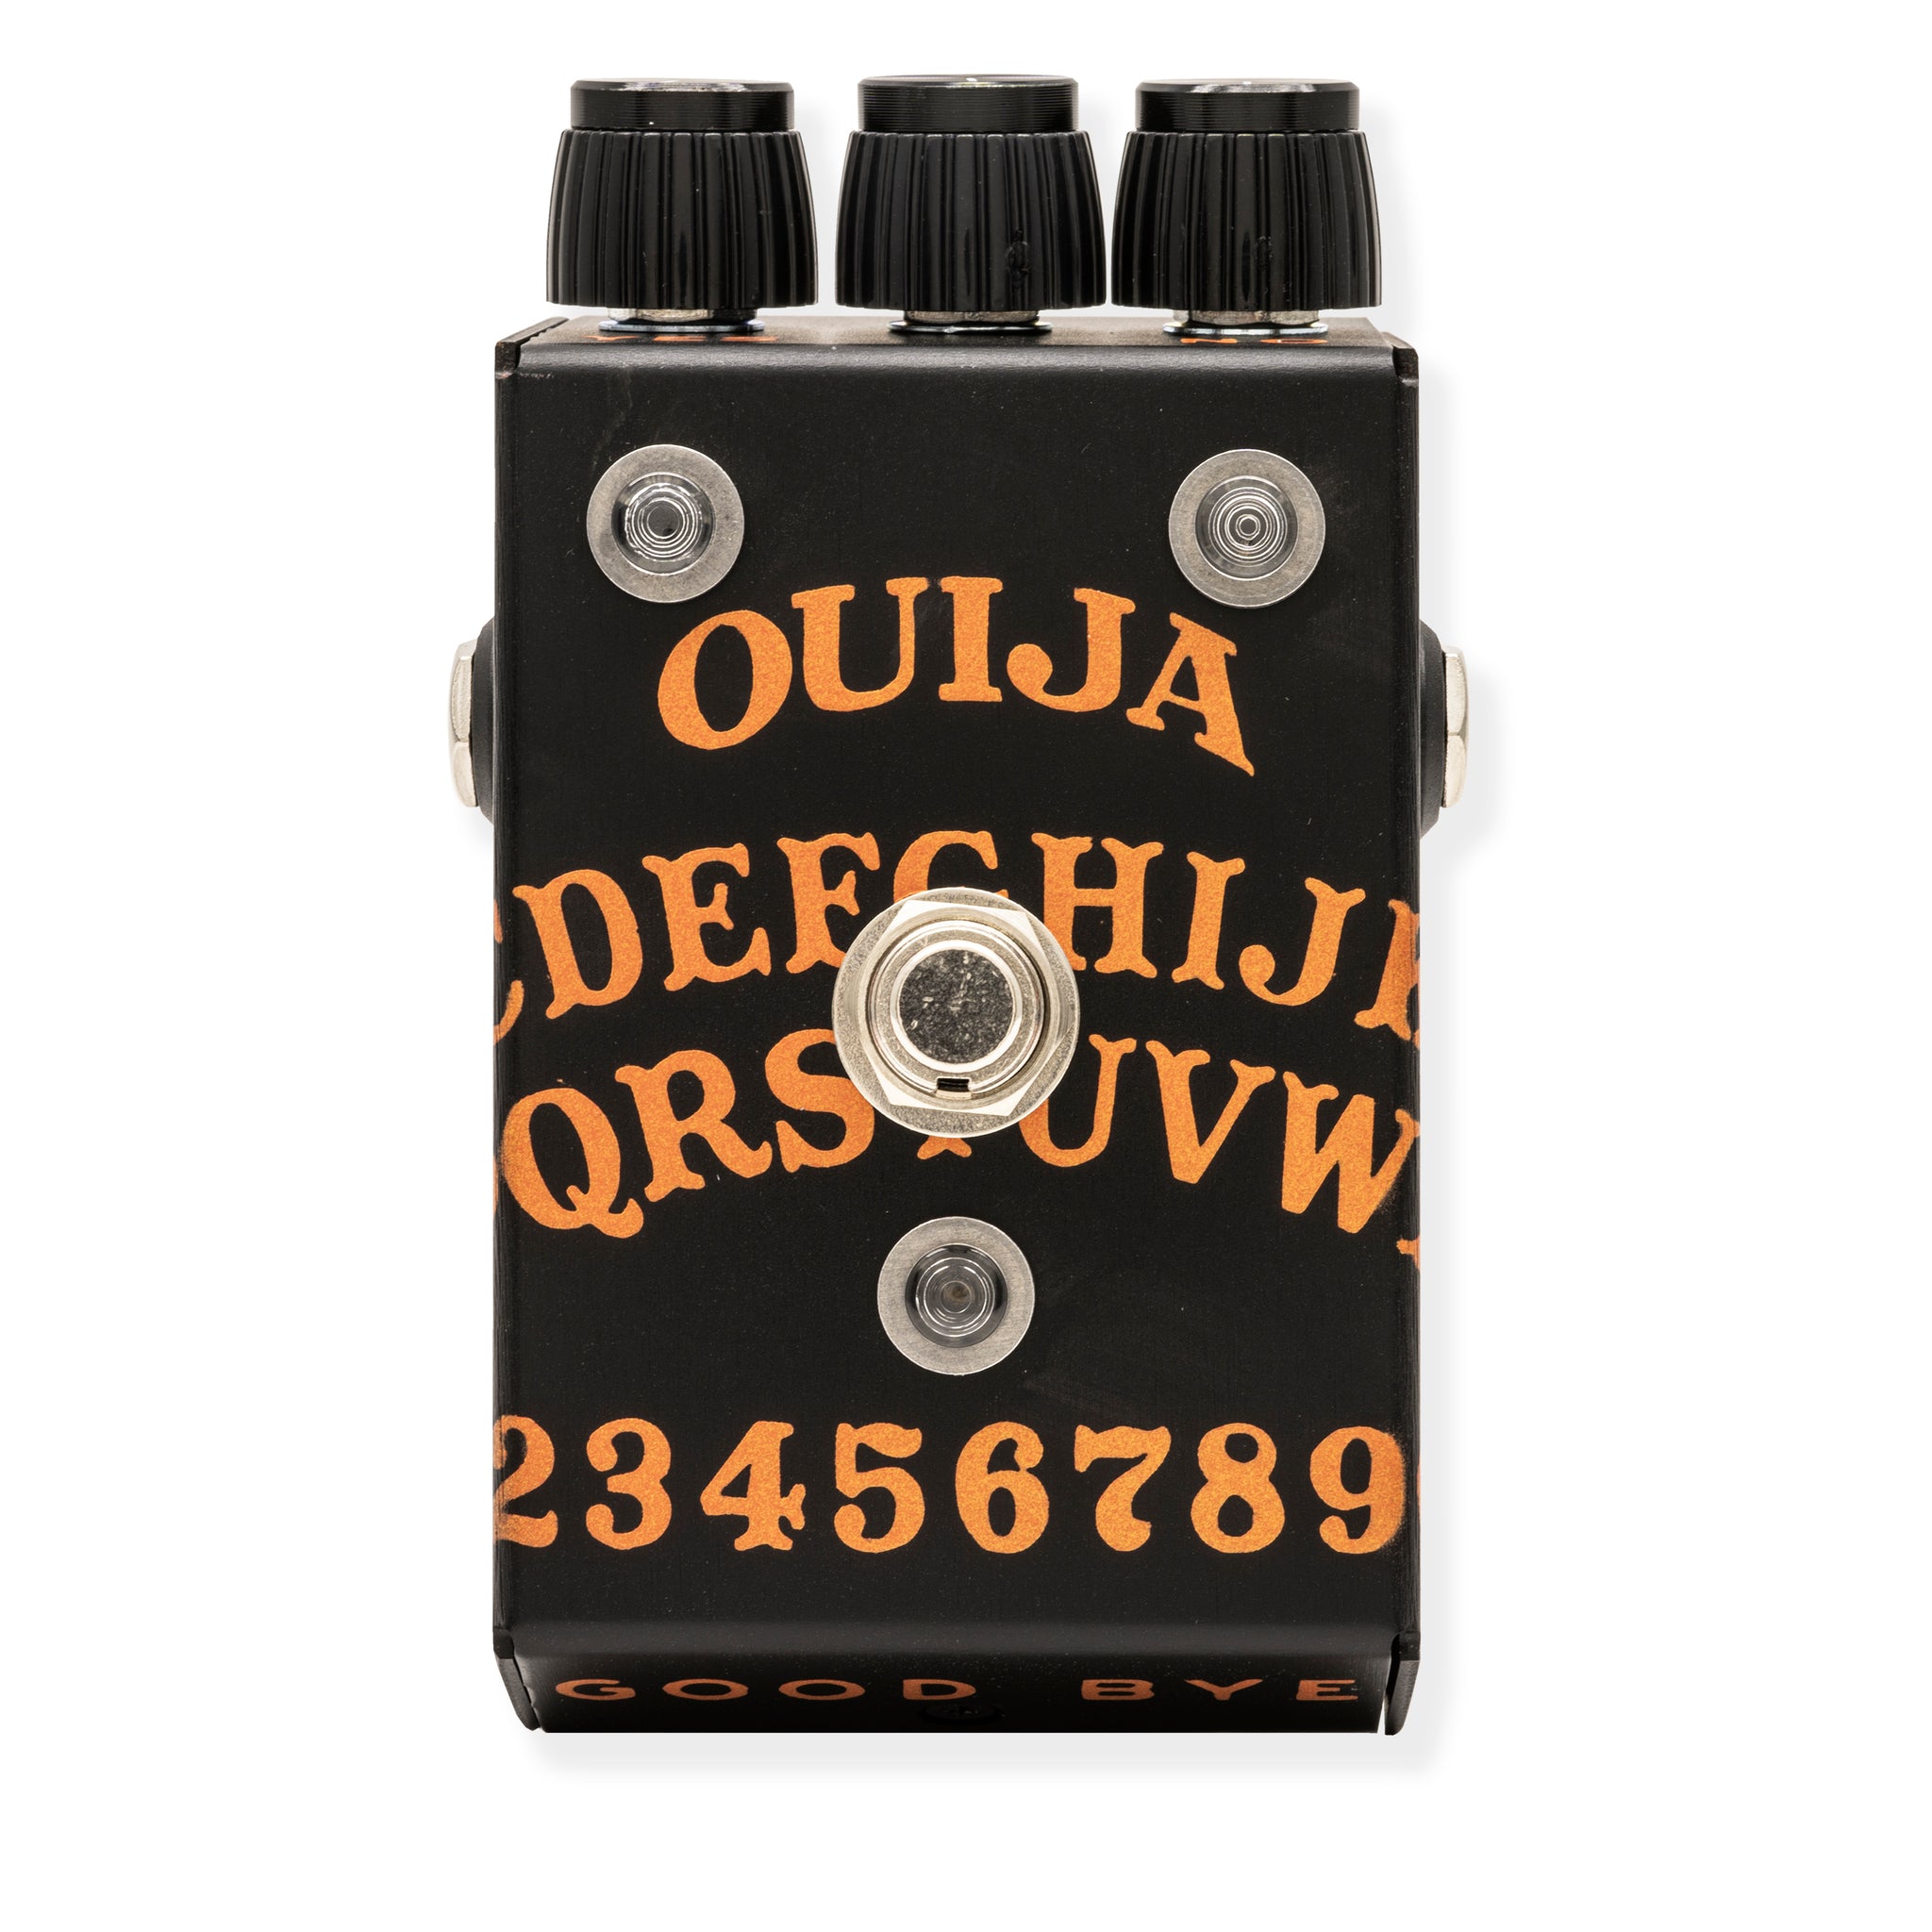 Octahive v2 • Custom Shop <p> Ouija